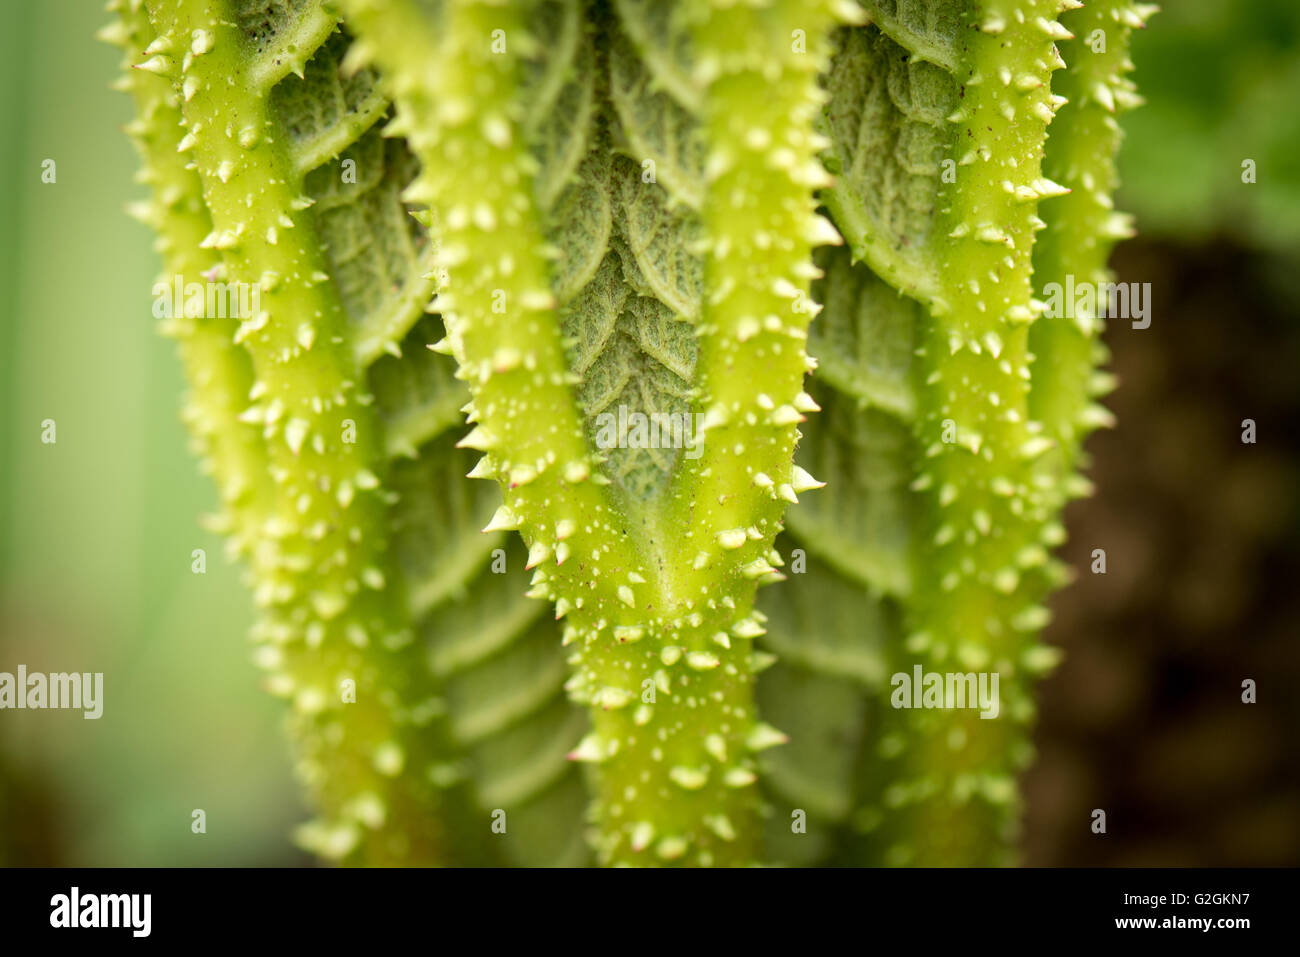 Riesen Rhabarber Gunnera Maniciata Blätter strukturierte faltig grüne in Kew Gardens London. Stockfoto